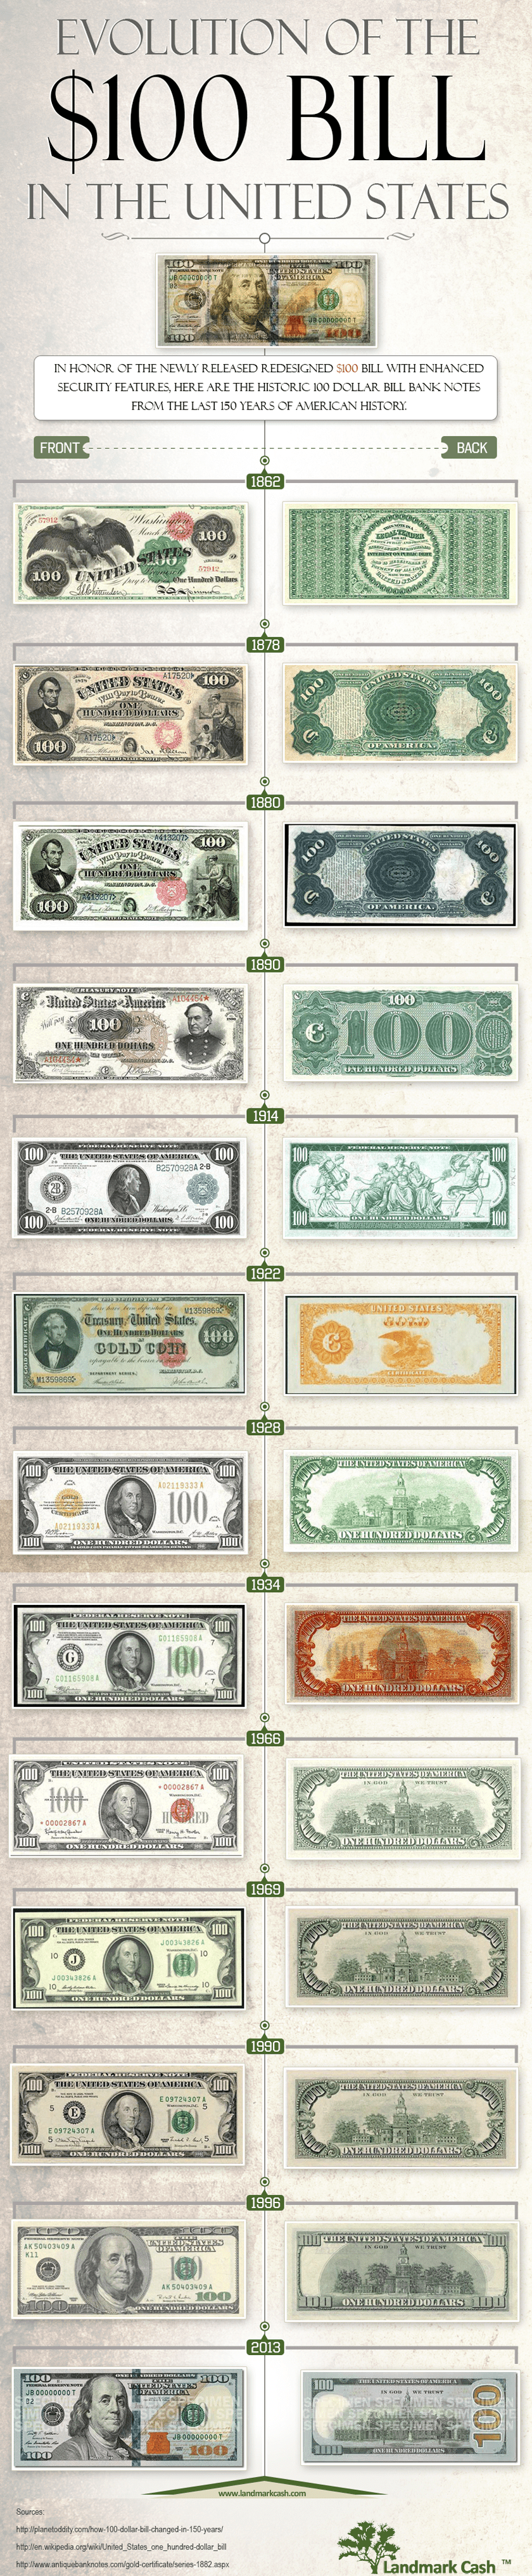 History of $100 dollar bill